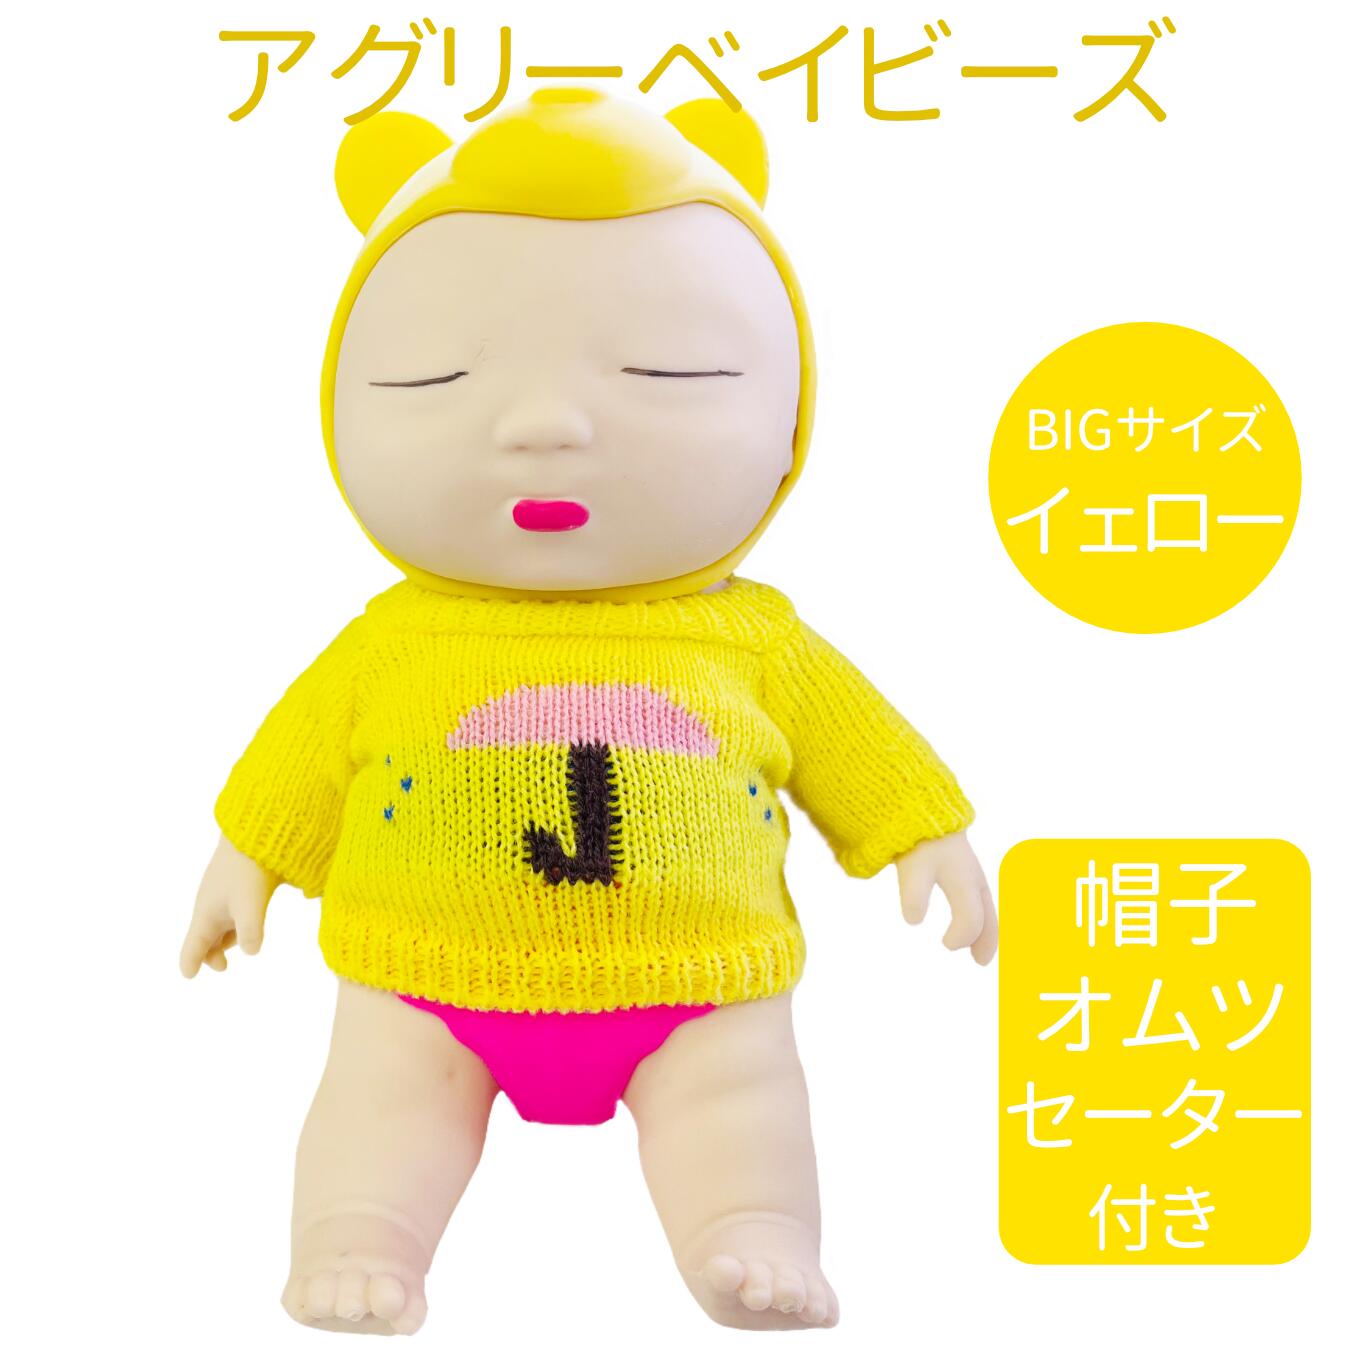 アグリーベイビーズ スクイーズ スクイーズ人形 おもちゃ 赤ちゃん スクイーズ玩具 低反発 伸縮性 触感いい ストレス解消 減圧おもちゃ 発散 グッズ 帽子おむつセーター付き 25cm (Yellow)